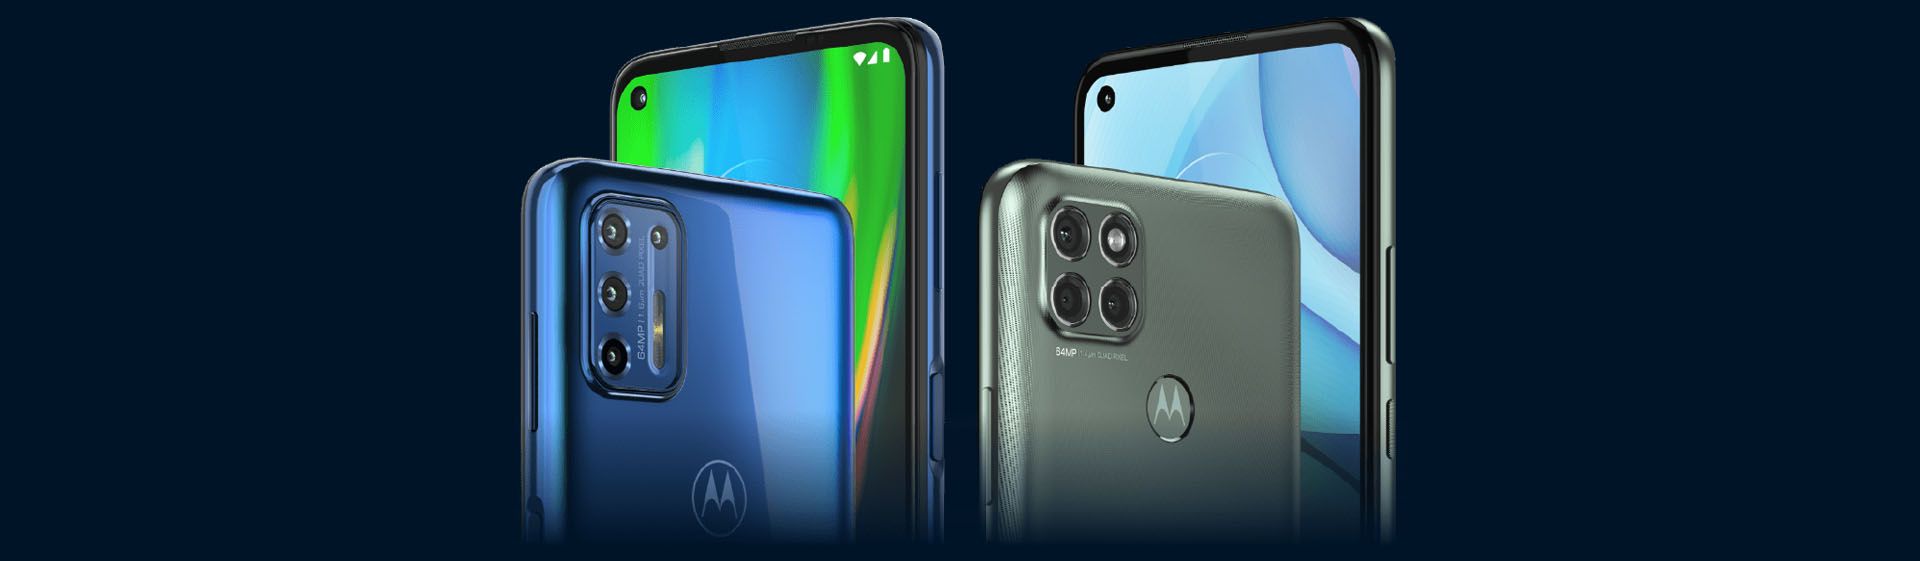 Motorola Moto G9 Plus vs Redmi note 9 Pro: comparativa